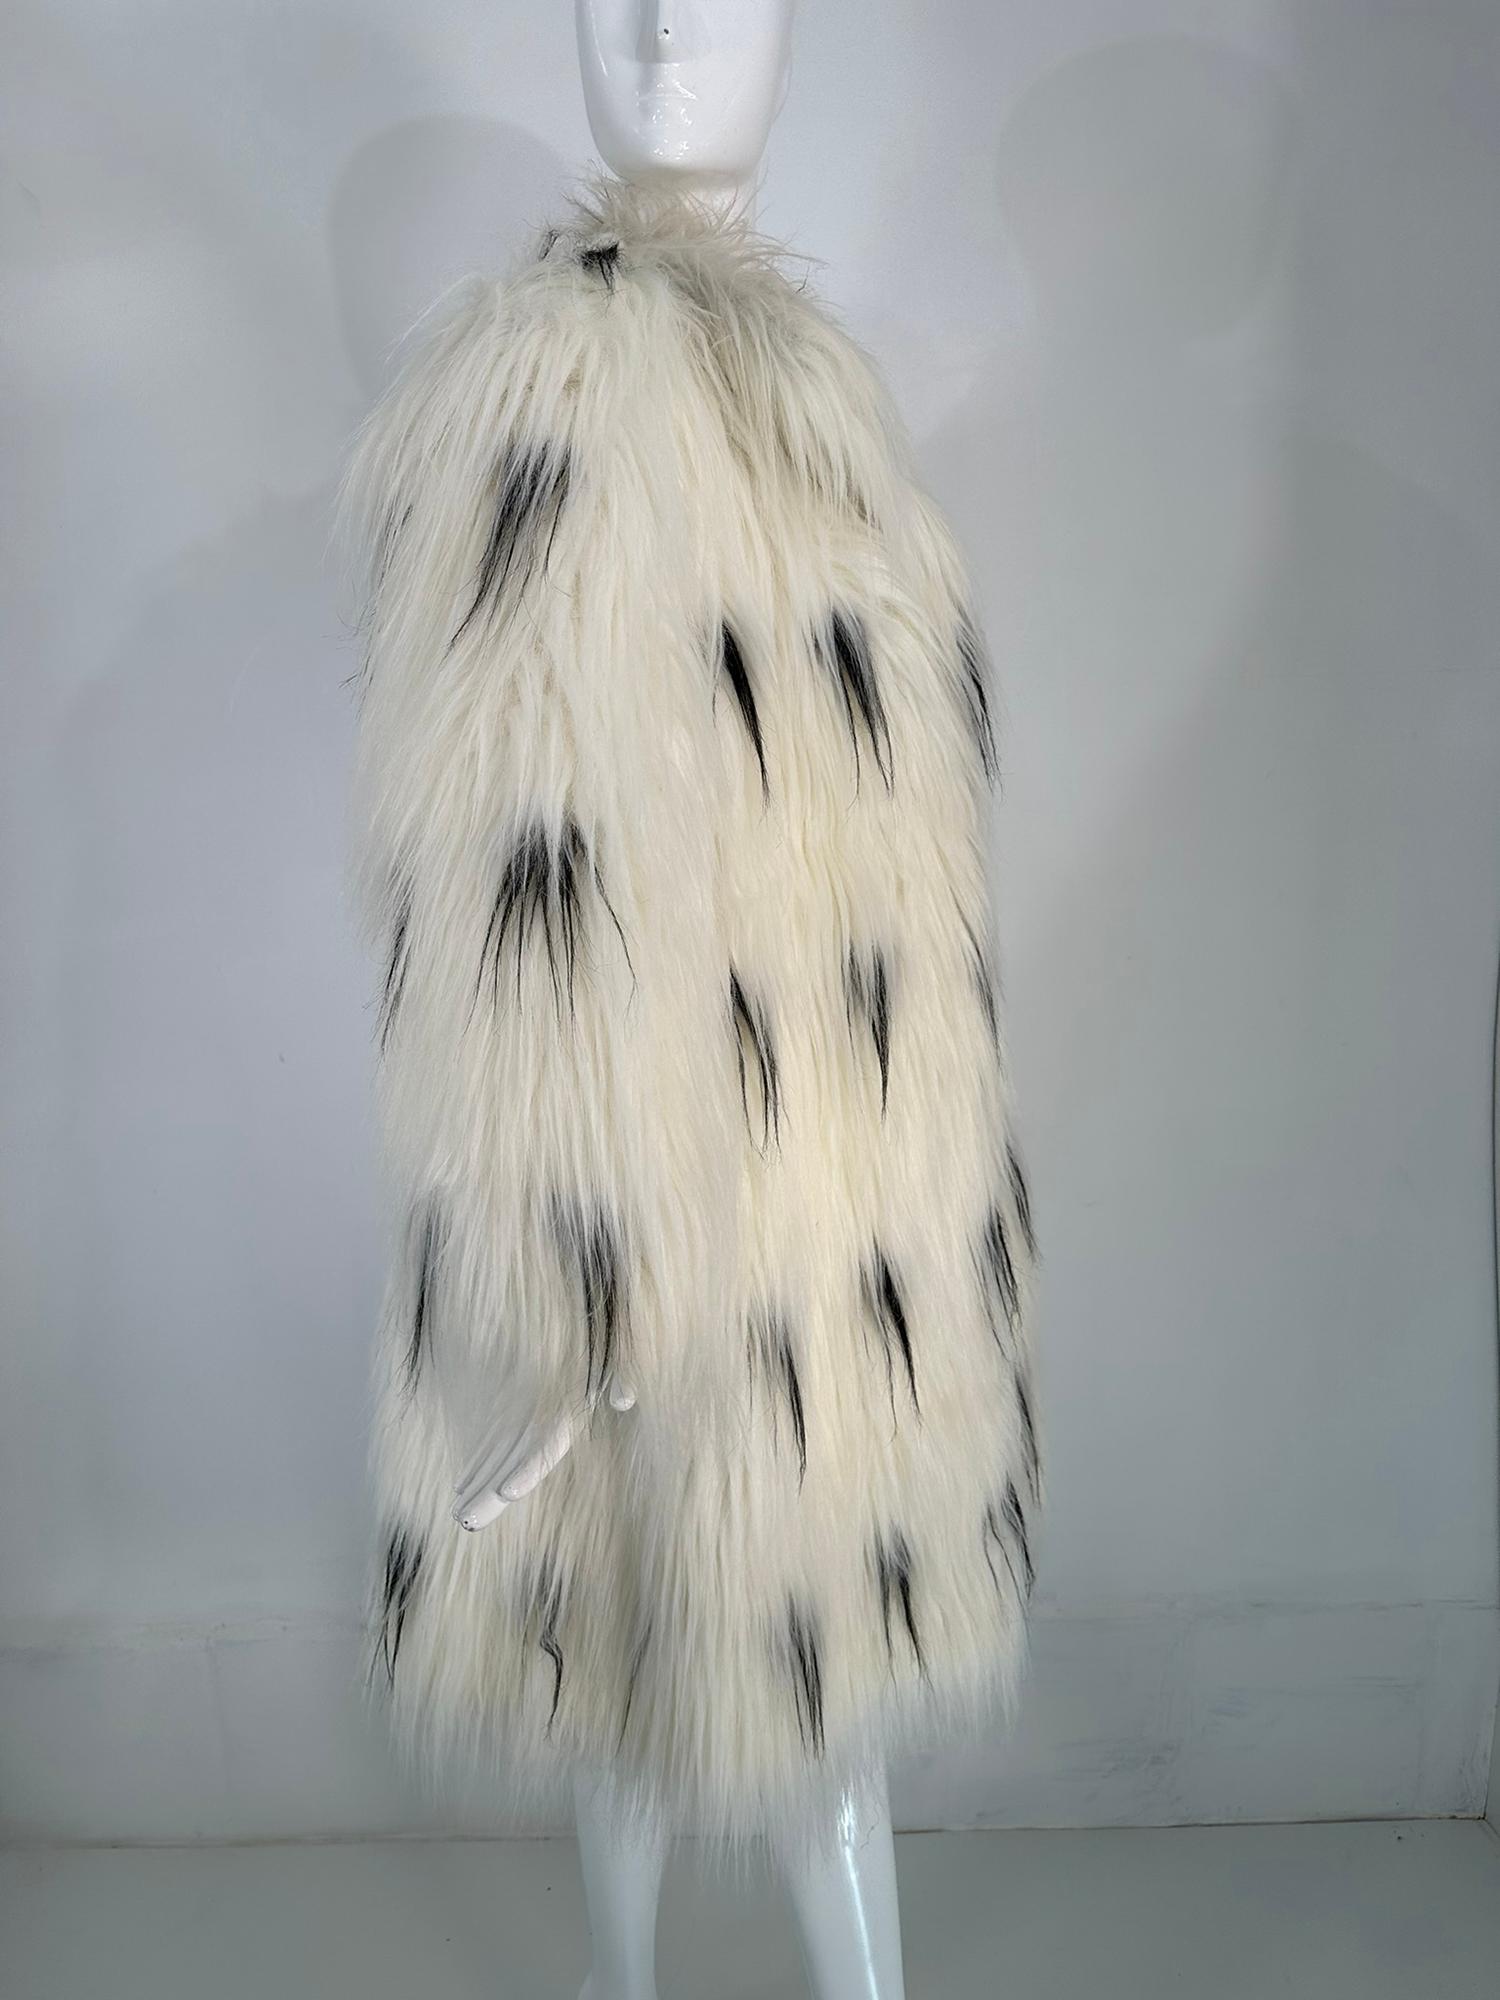 Gray Pauline Trigere Black & White Shaggy Faux Fur Coat 1980s